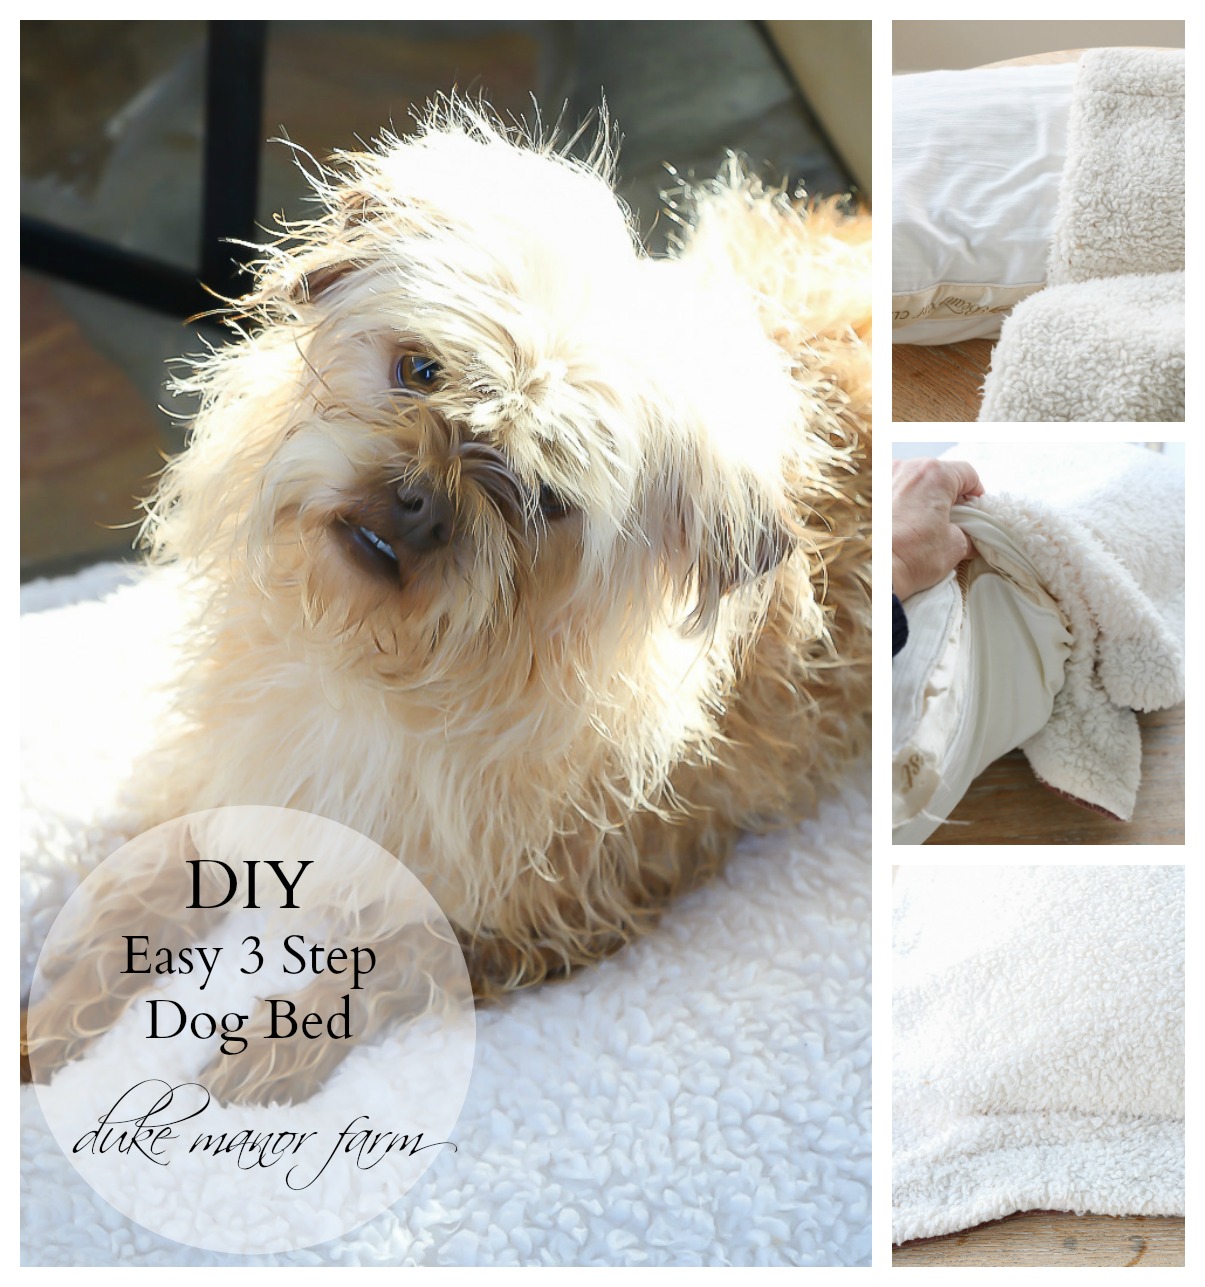 Easy 3 Step DIY Dog Bed